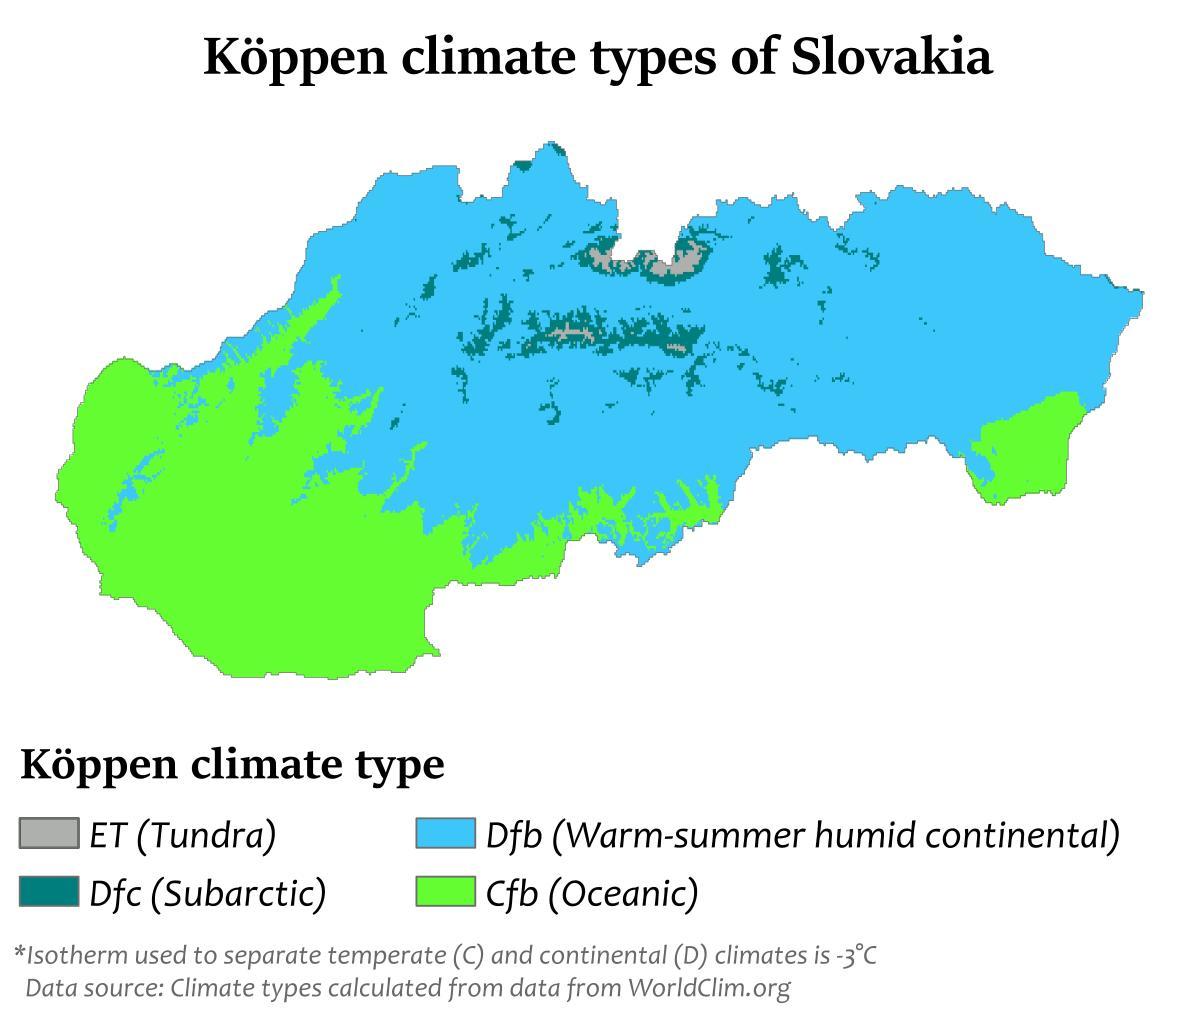 Mapa de temperatura de Eslovaquia